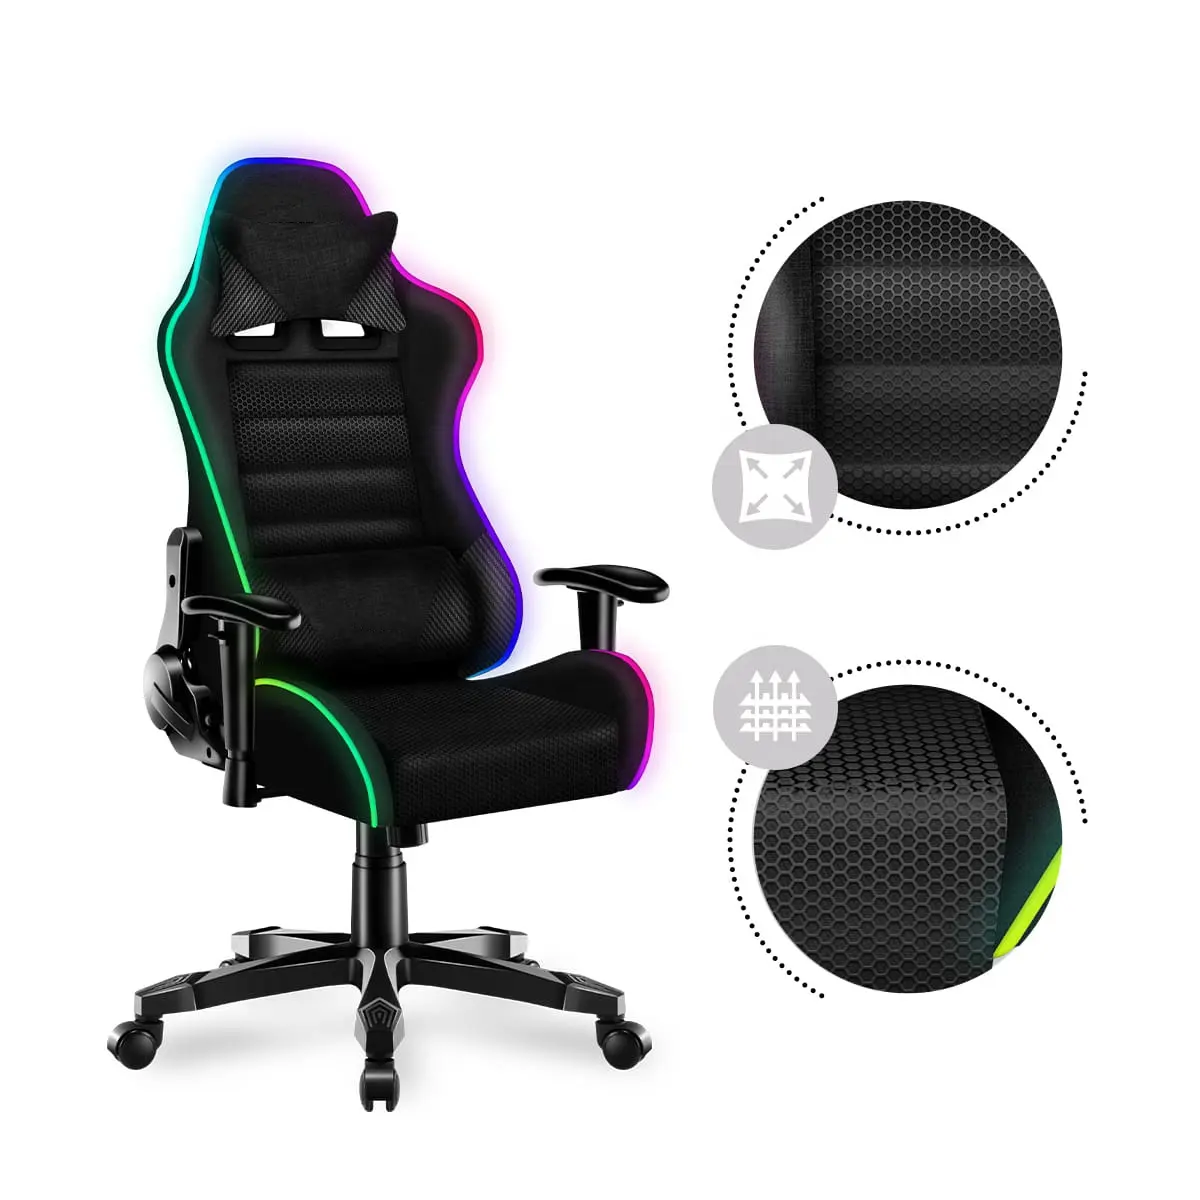 Silla Gamer con luces LED RGB de color negro y tela de malla, silla Gaming con diseño único de carbono, económica, 2D, accesorios personalizados gratis, luces LED RGB